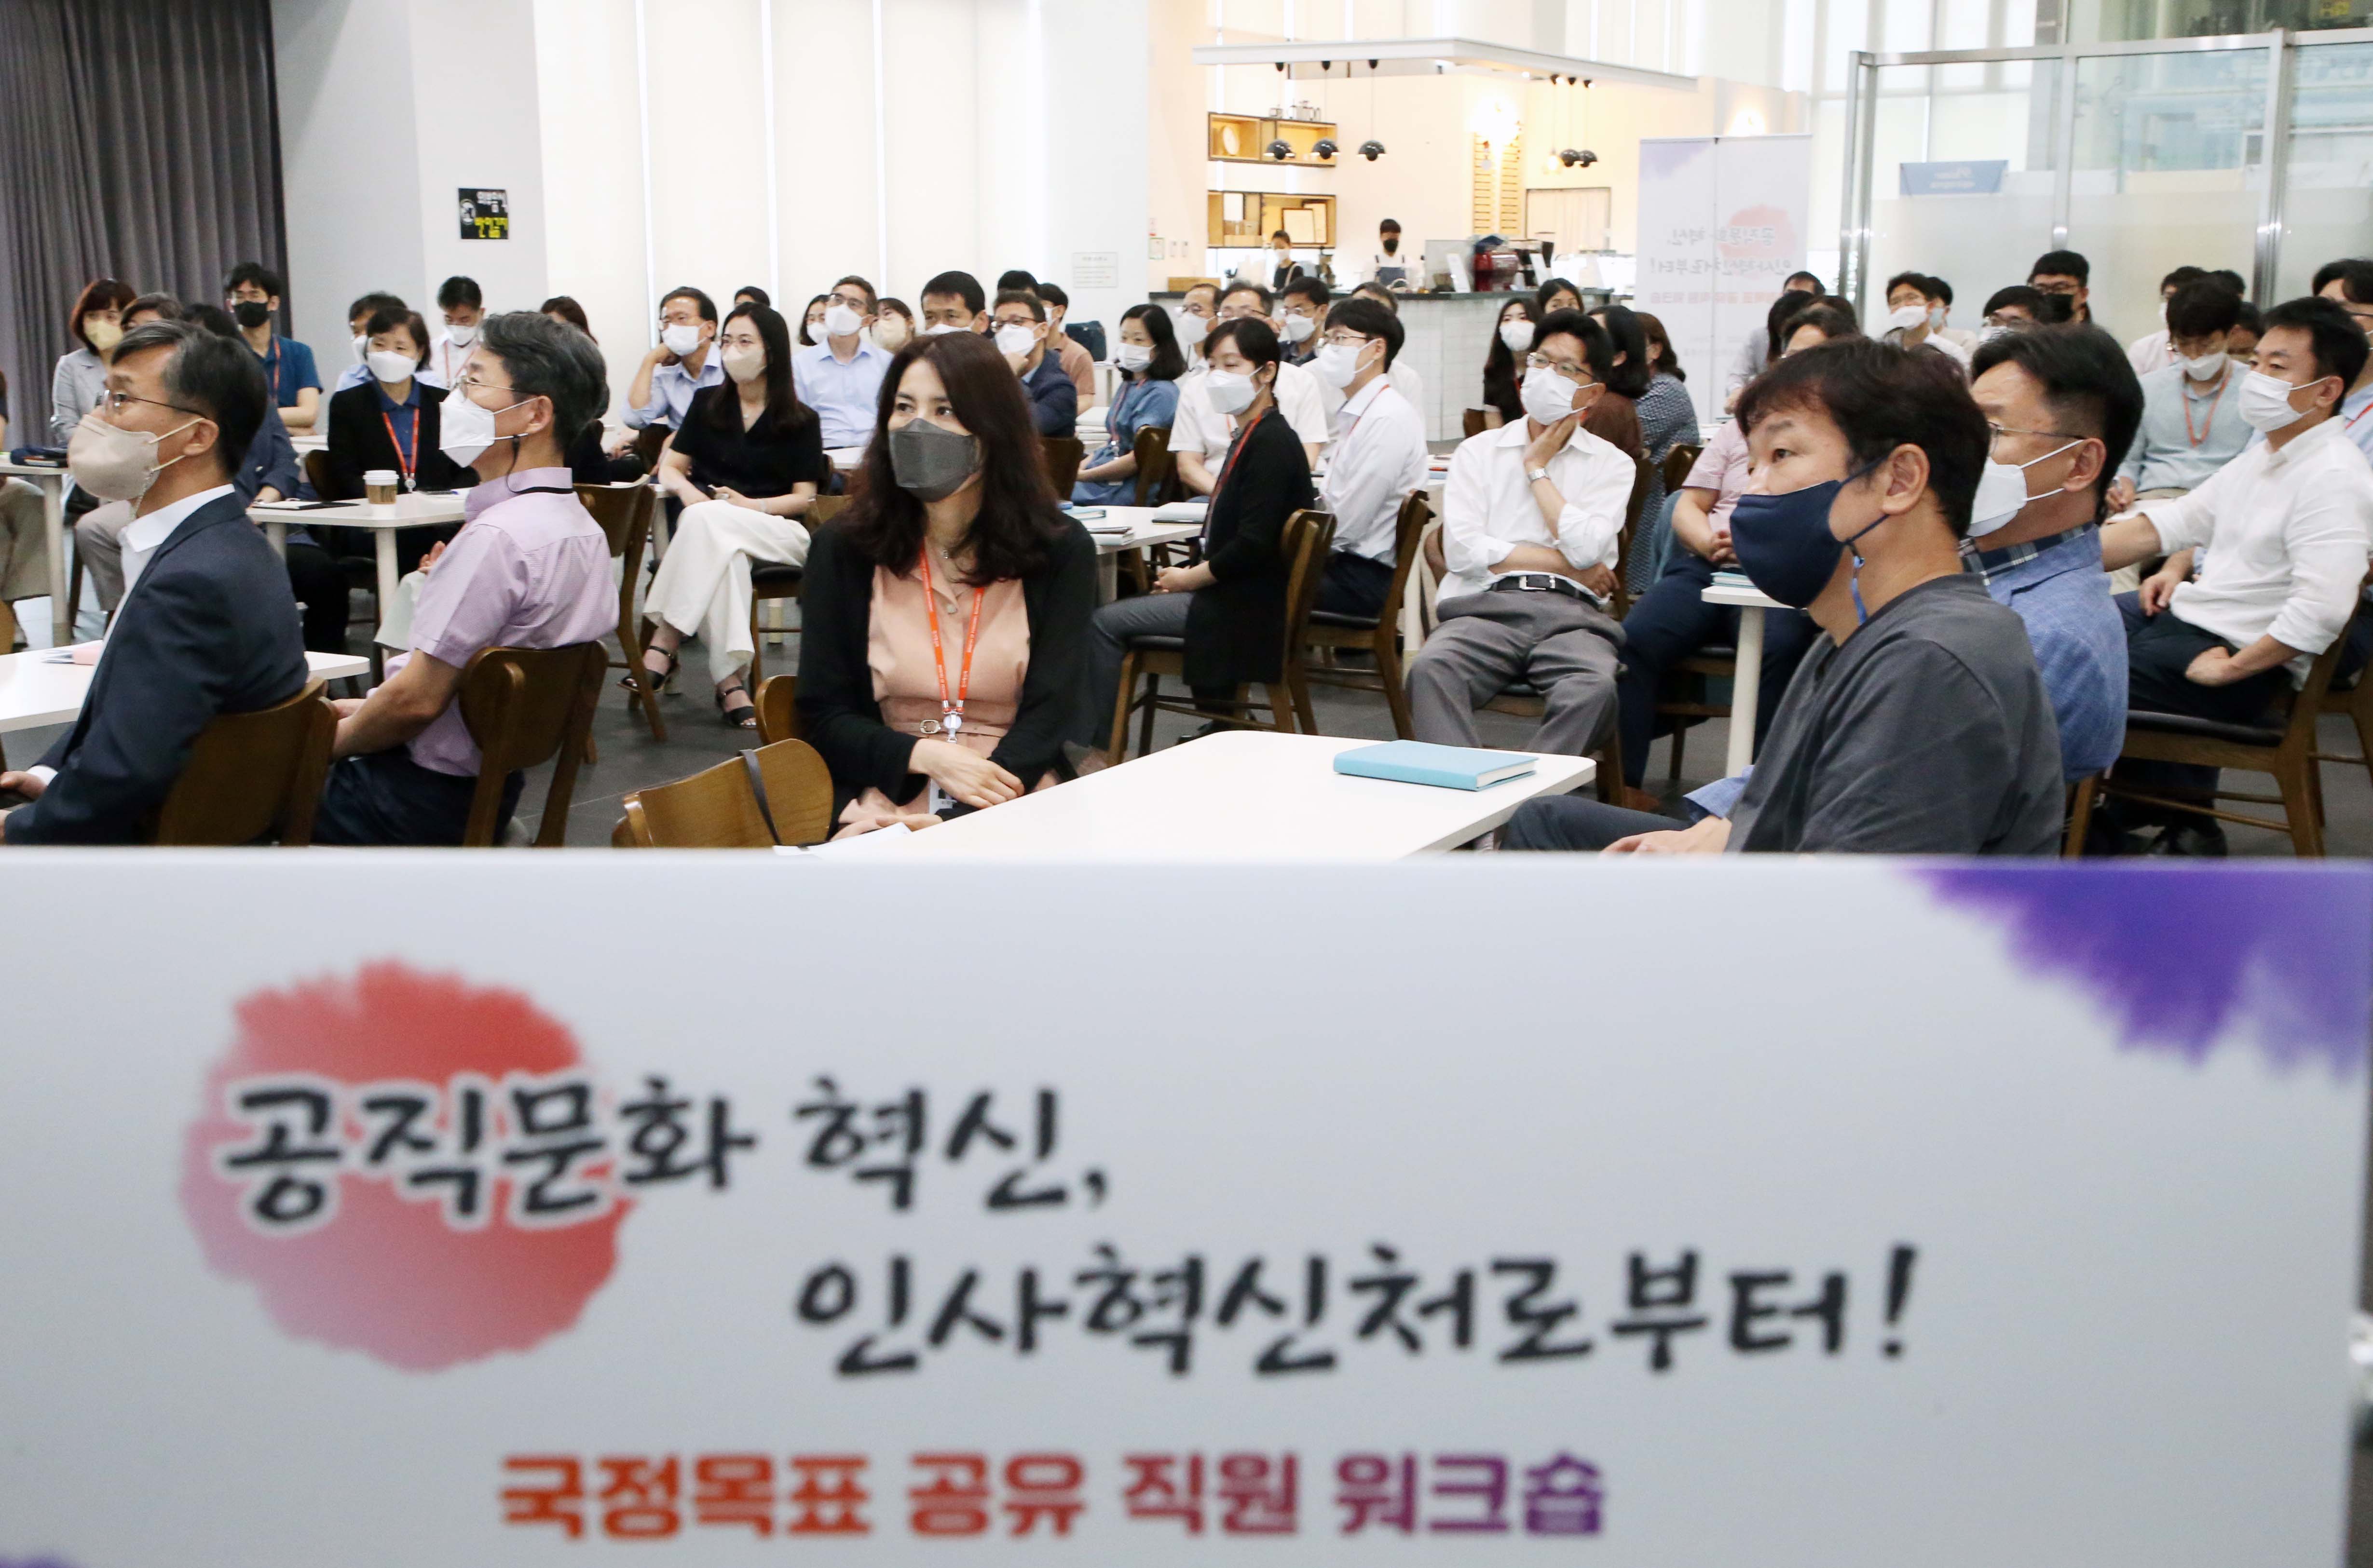 13일 세종시 인사혁신처에서 열린 '국정목표 공유 인사혁신처 연수회'에서 경청하는 직원들의 모습. 